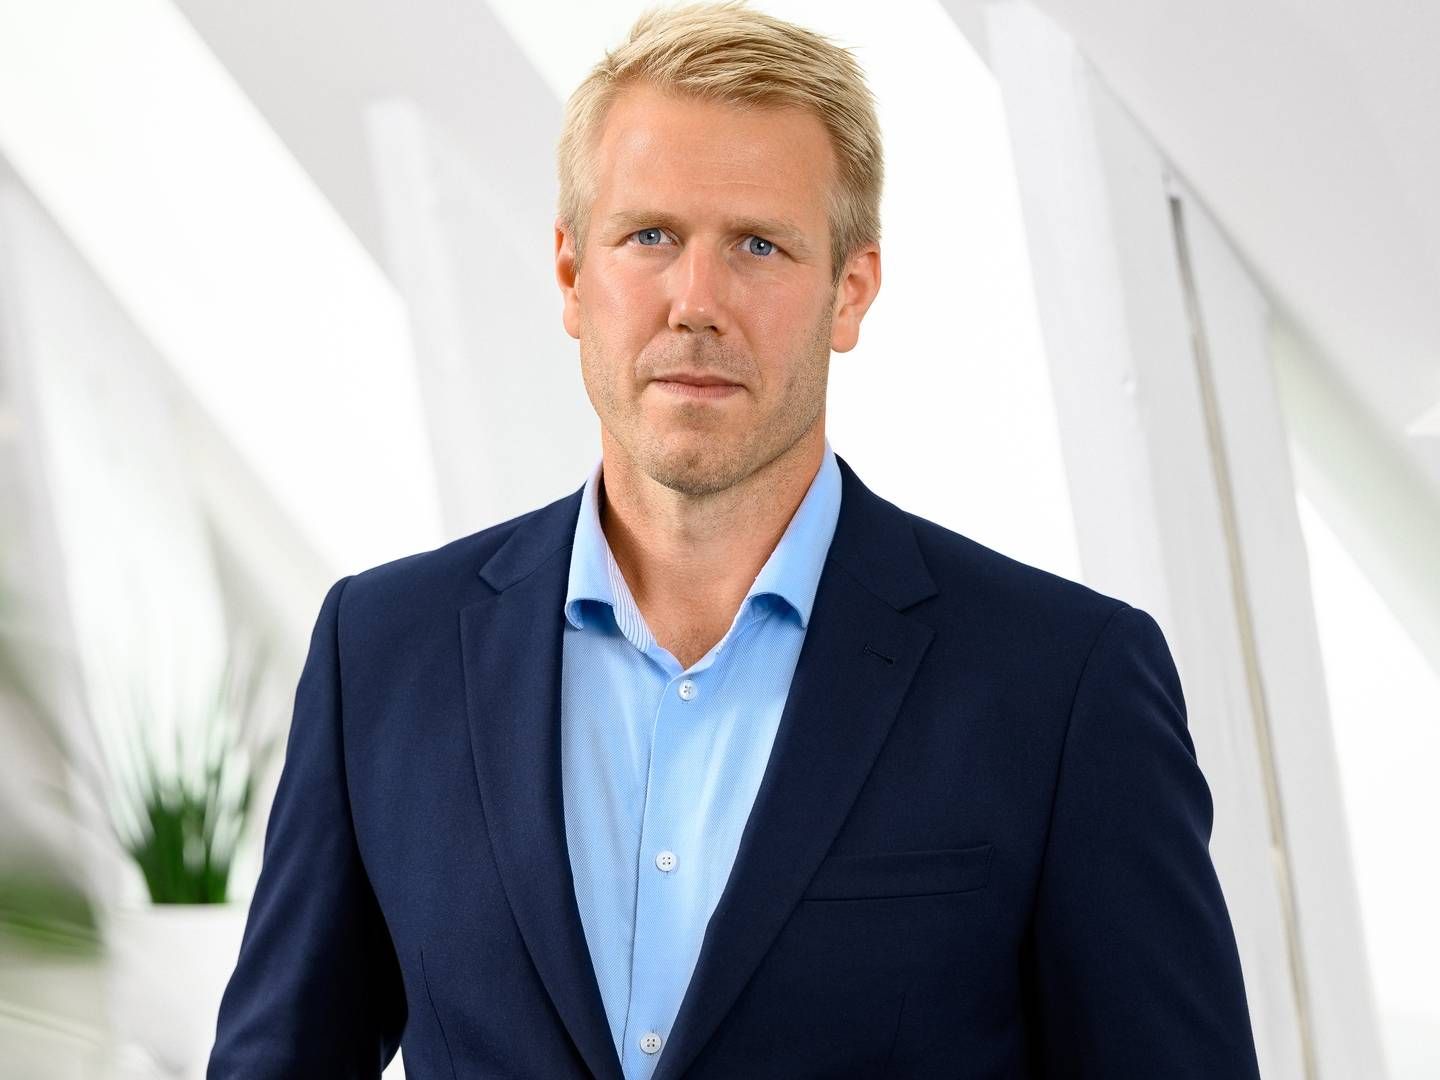 IKKE NY SJEF: Erik Hansson blir allikevel ikke ny økonomidirektør i Kjell Group. | Foto: Kjell Group